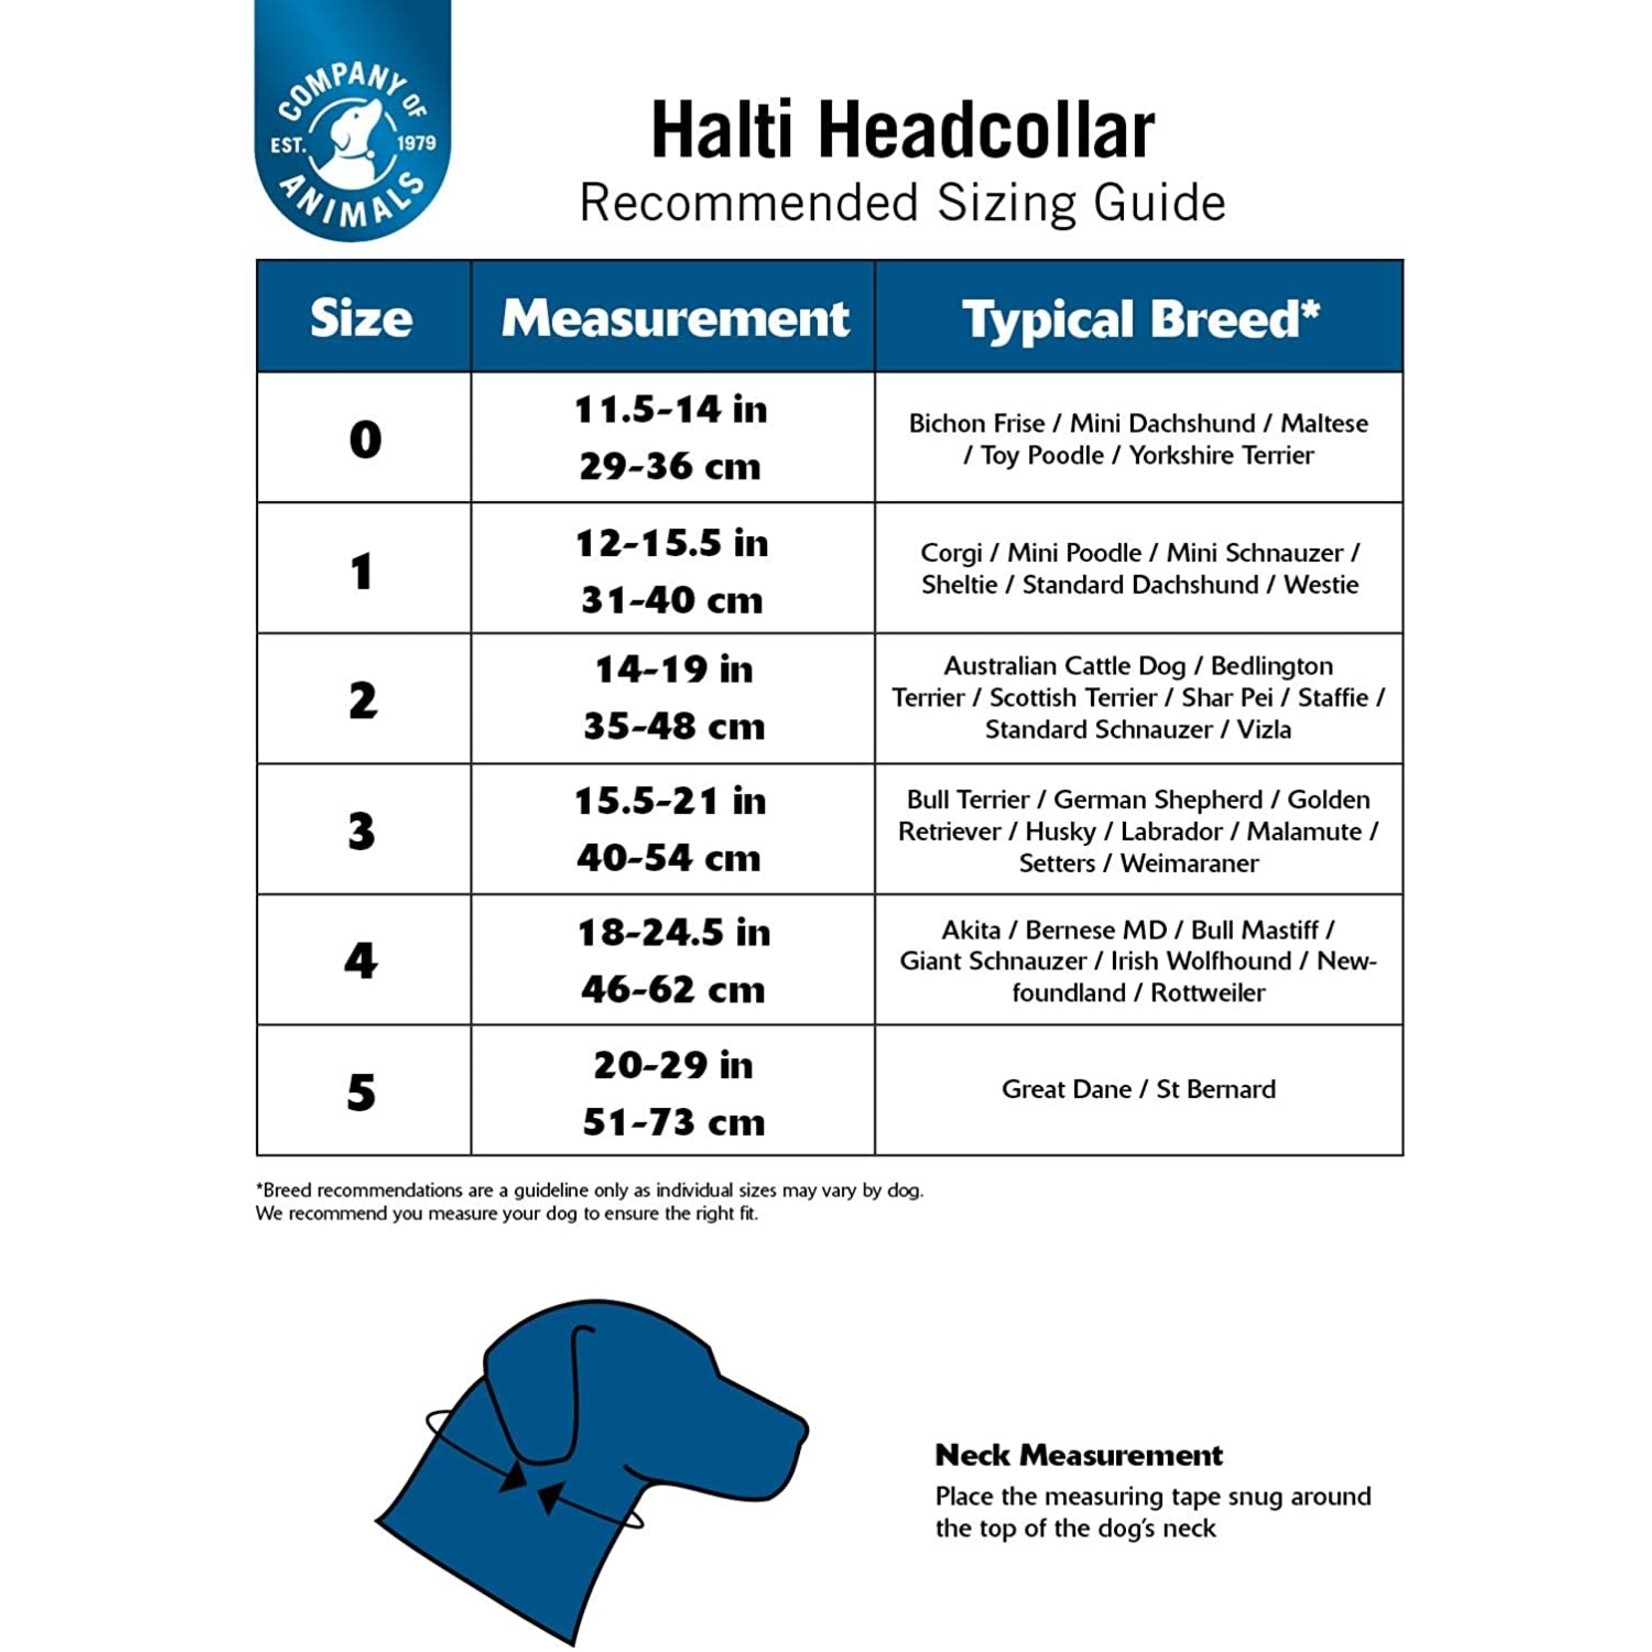 Halti headcollar size3